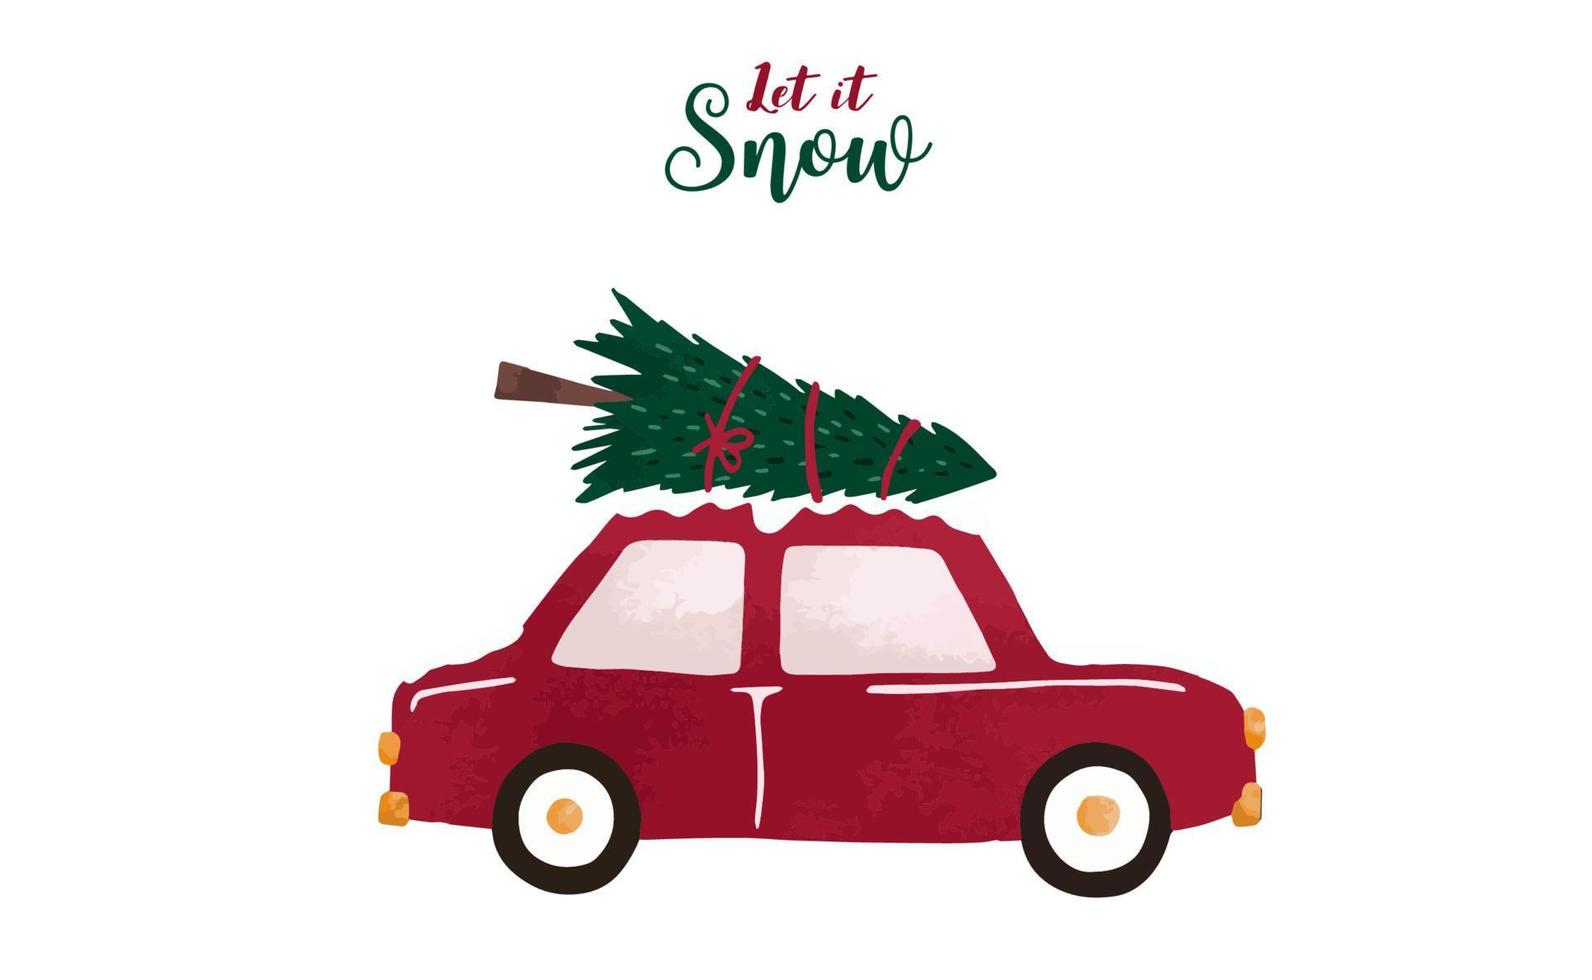 Sammlung von Weihnachtshintergrund mit Car.editable-Vektor-Illustration für Neujahrseinladung, Postkarte und Website-Banner vektor